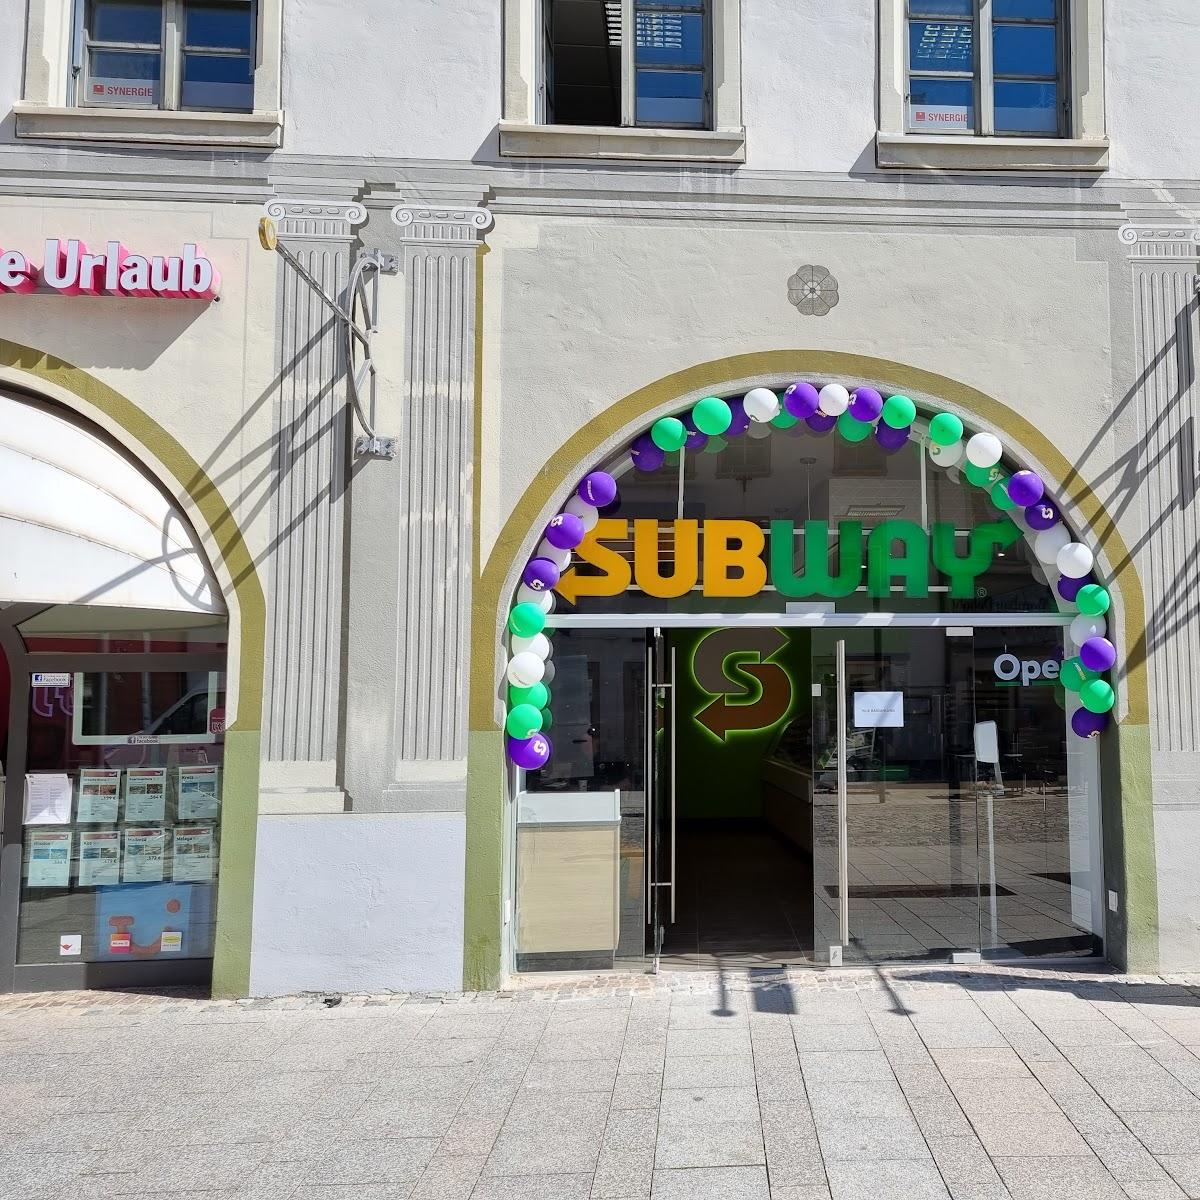 Restaurant "Subway" in Villingen-Schwenningen